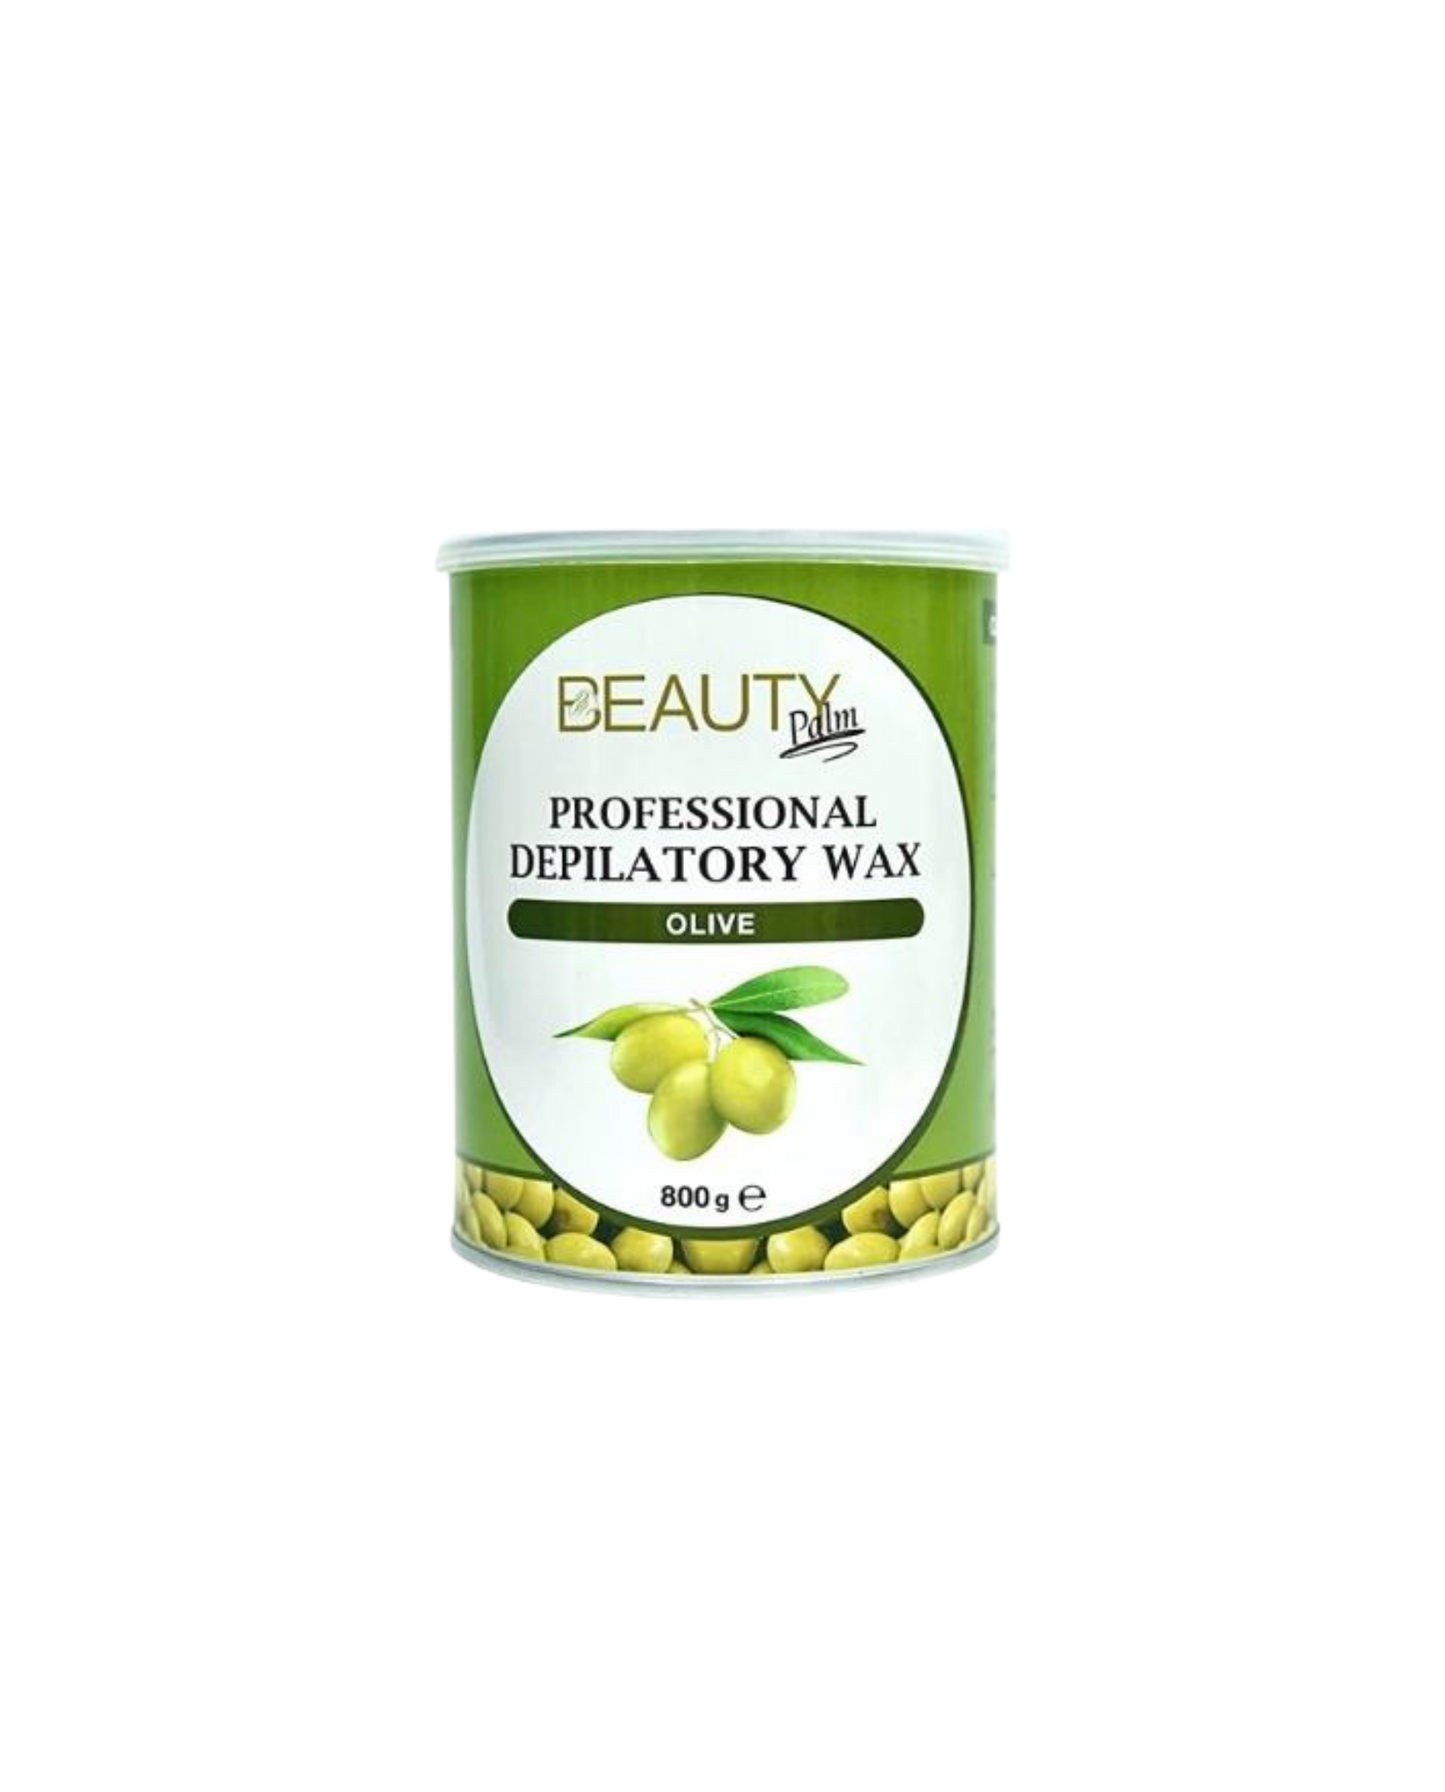 Beauty Palm Professional Depilatory Wax 800g